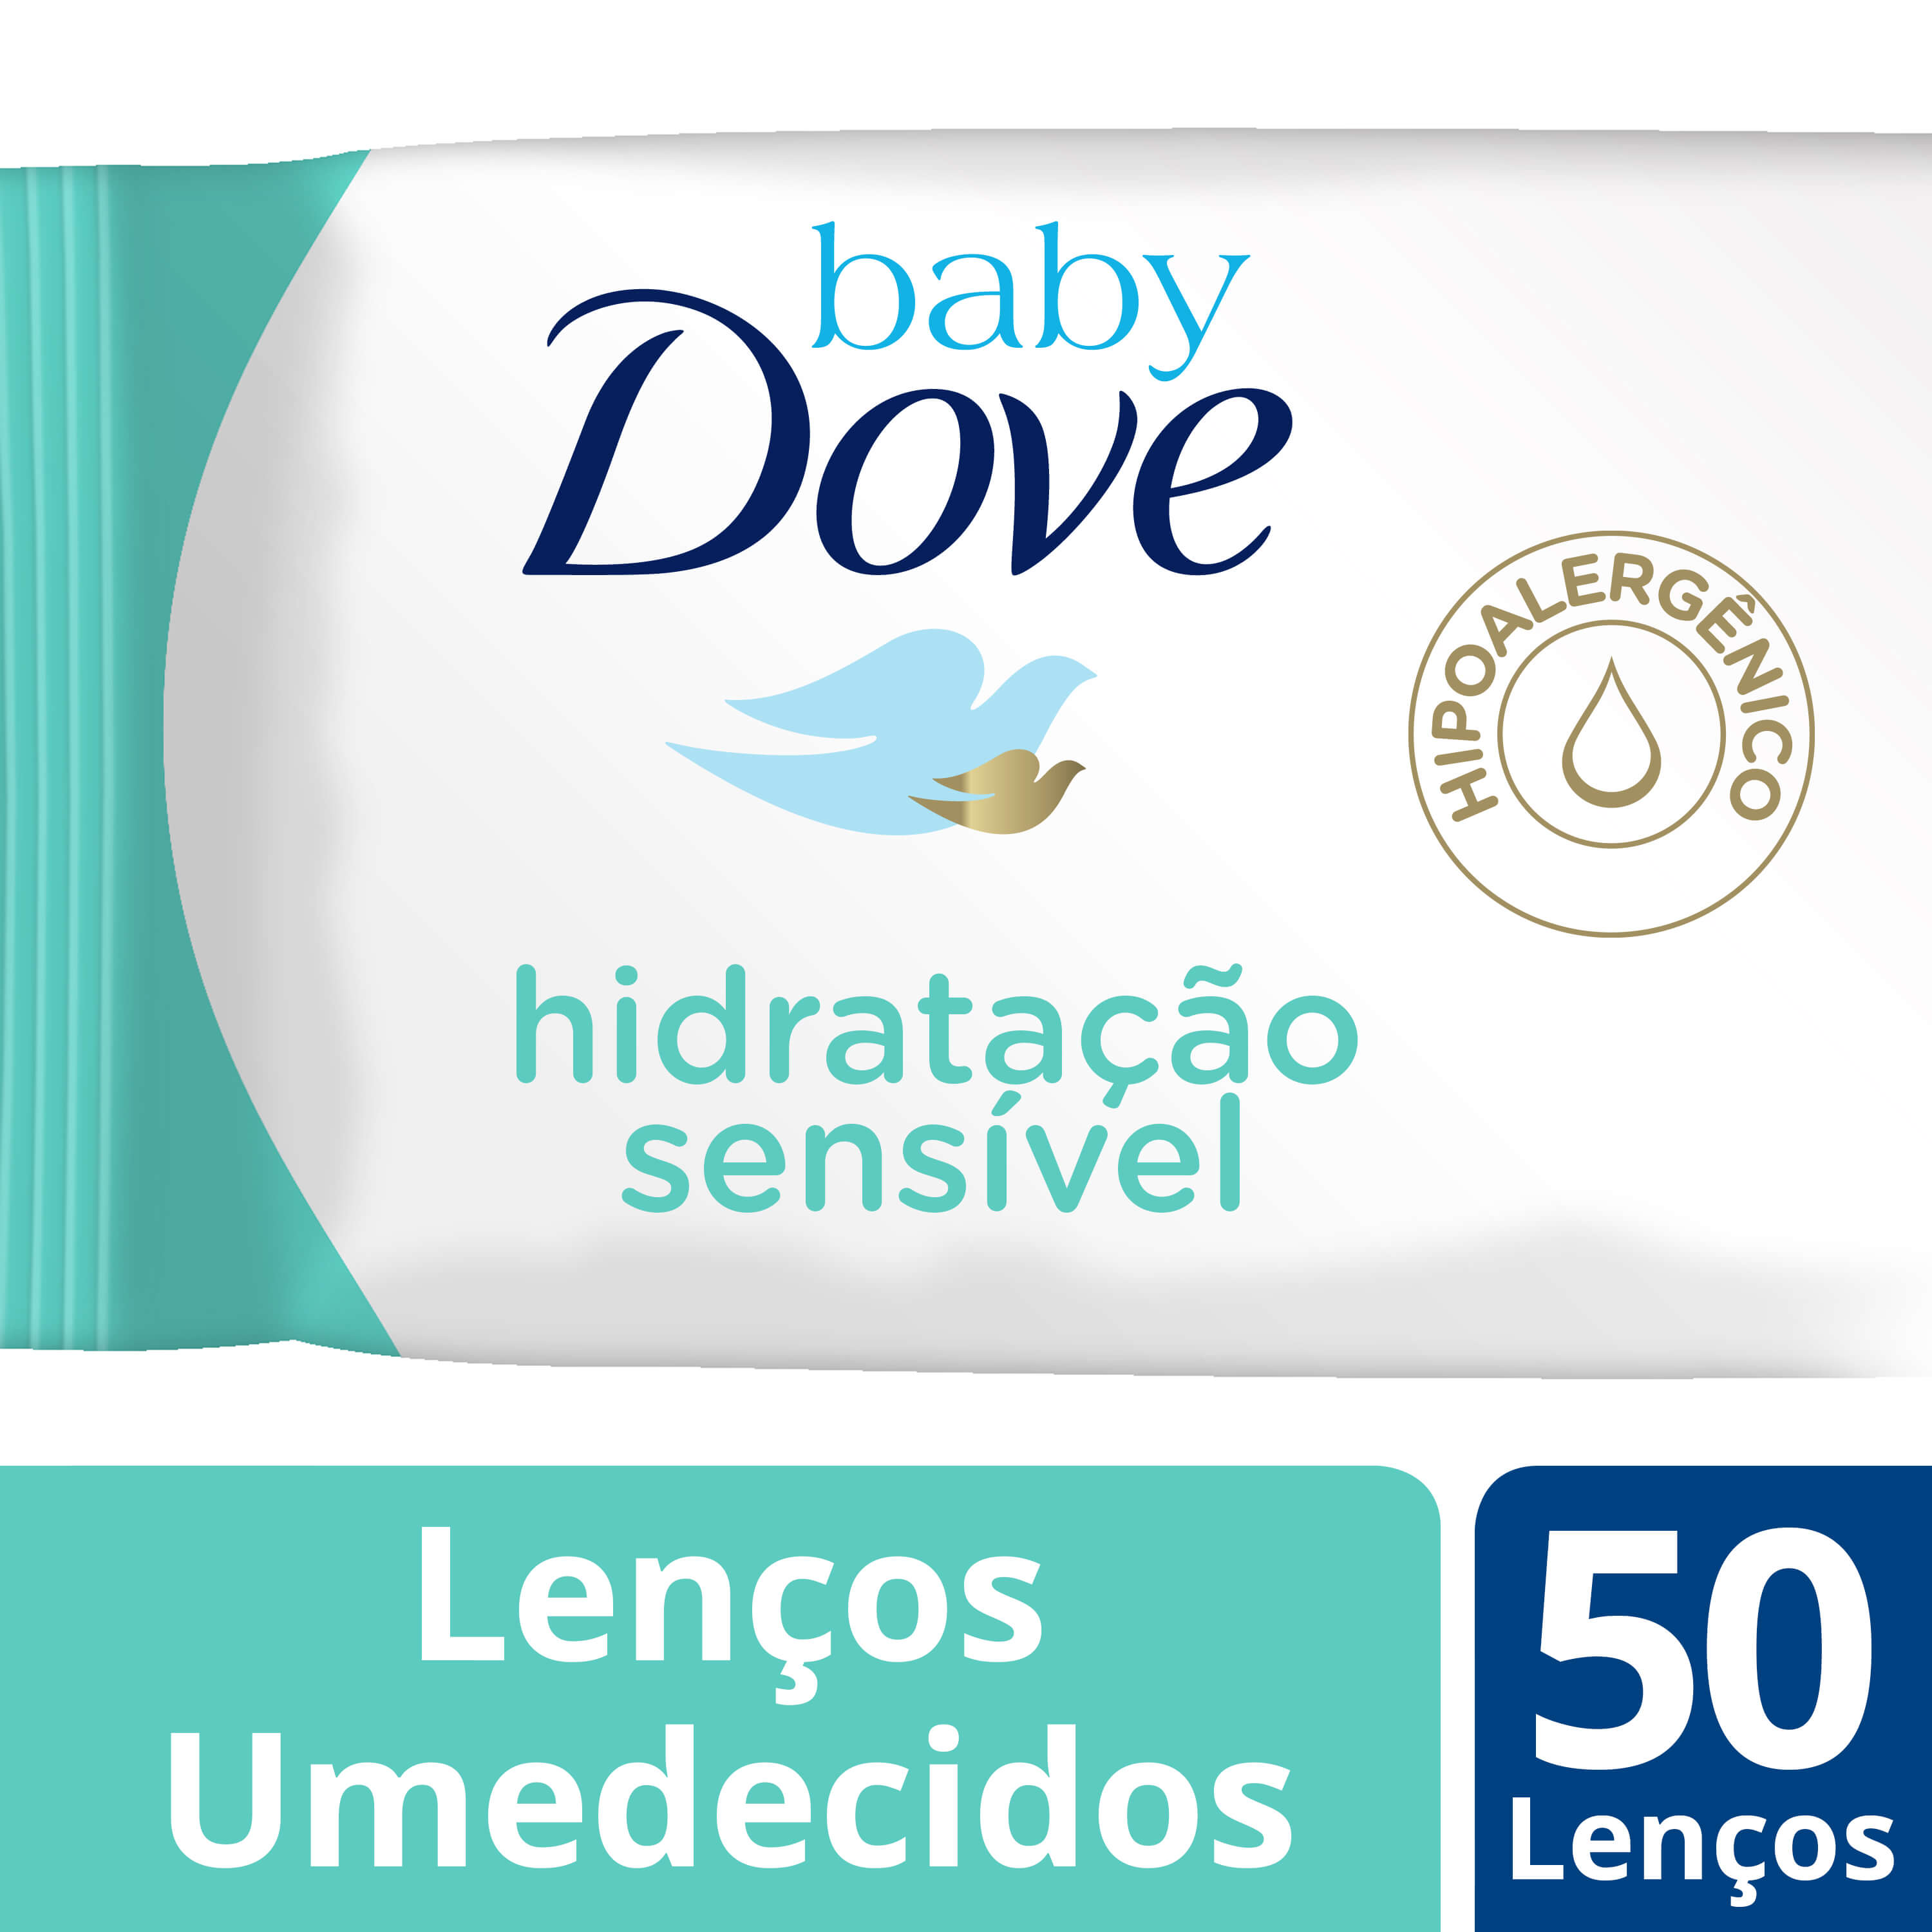 Lenços Umedecidos Baby Dove Hidratação Sensível 50 Lenços